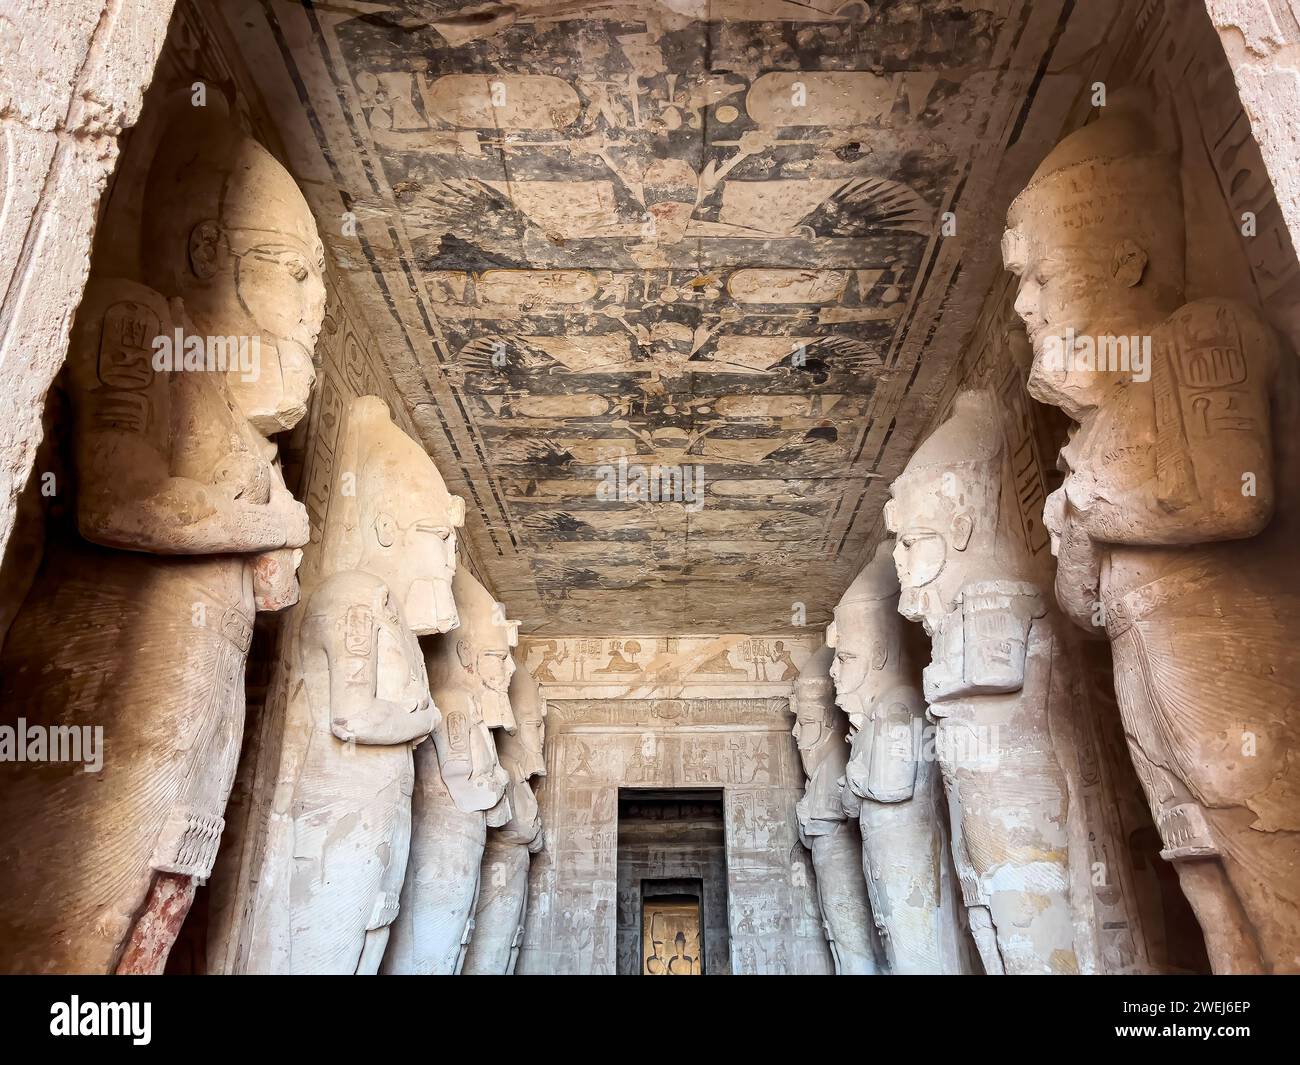 Vue intérieure du Grand Temple d'Abou Simbel avec ses chambres successivement plus petites menant au sanctuaire, Égypte. Banque D'Images